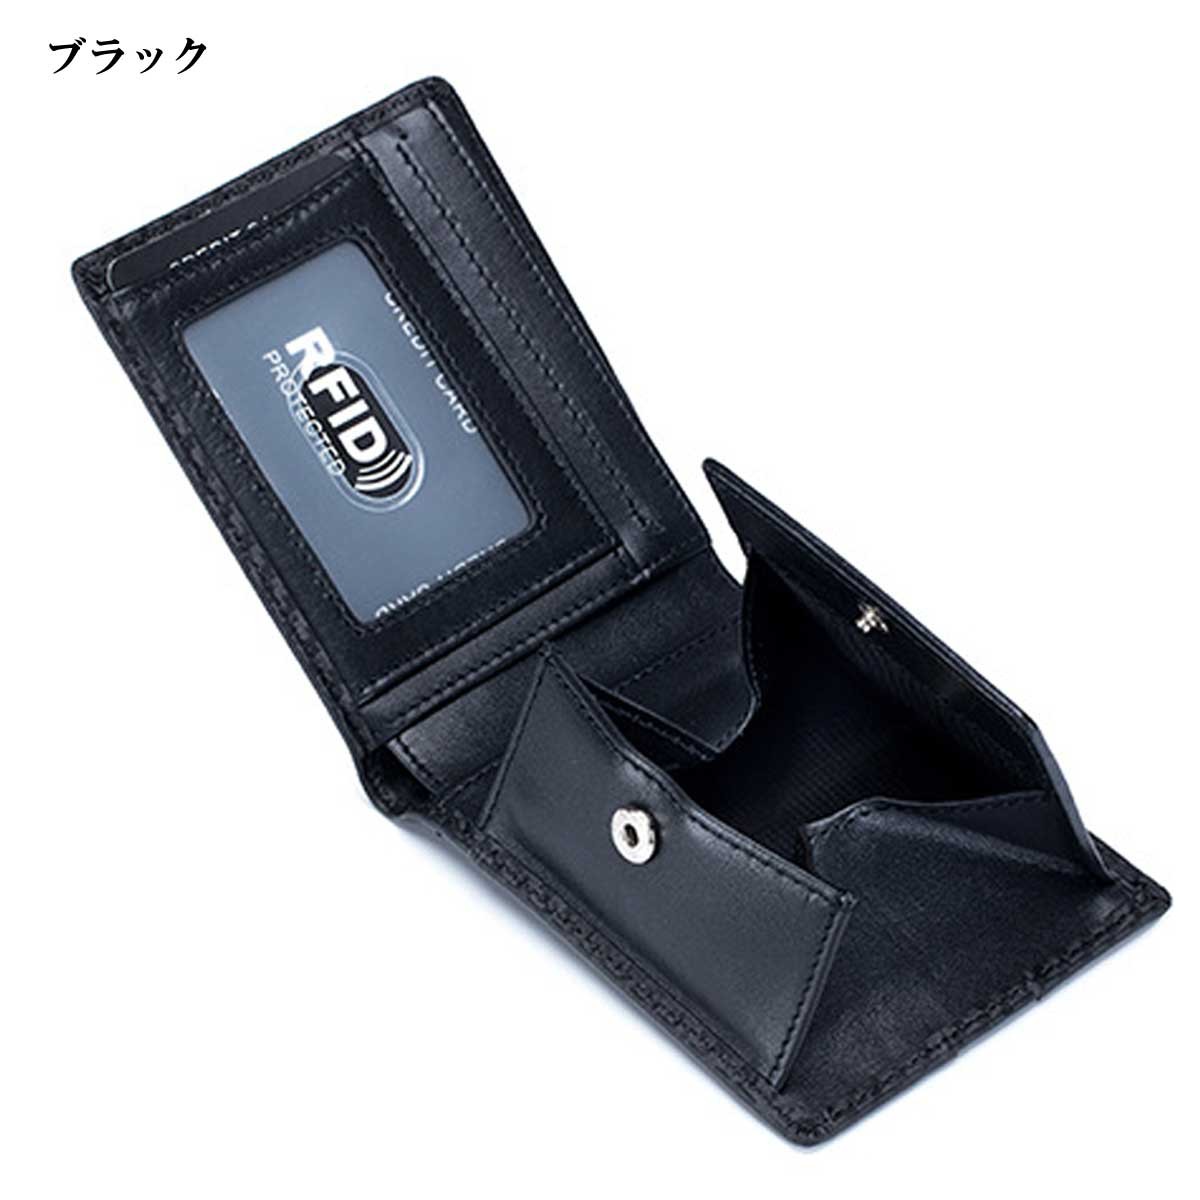 メンズ ウォレット メンズ財布 カーボンレザー二つ折りウォレット スリムウォレット スリム 薄型財布...